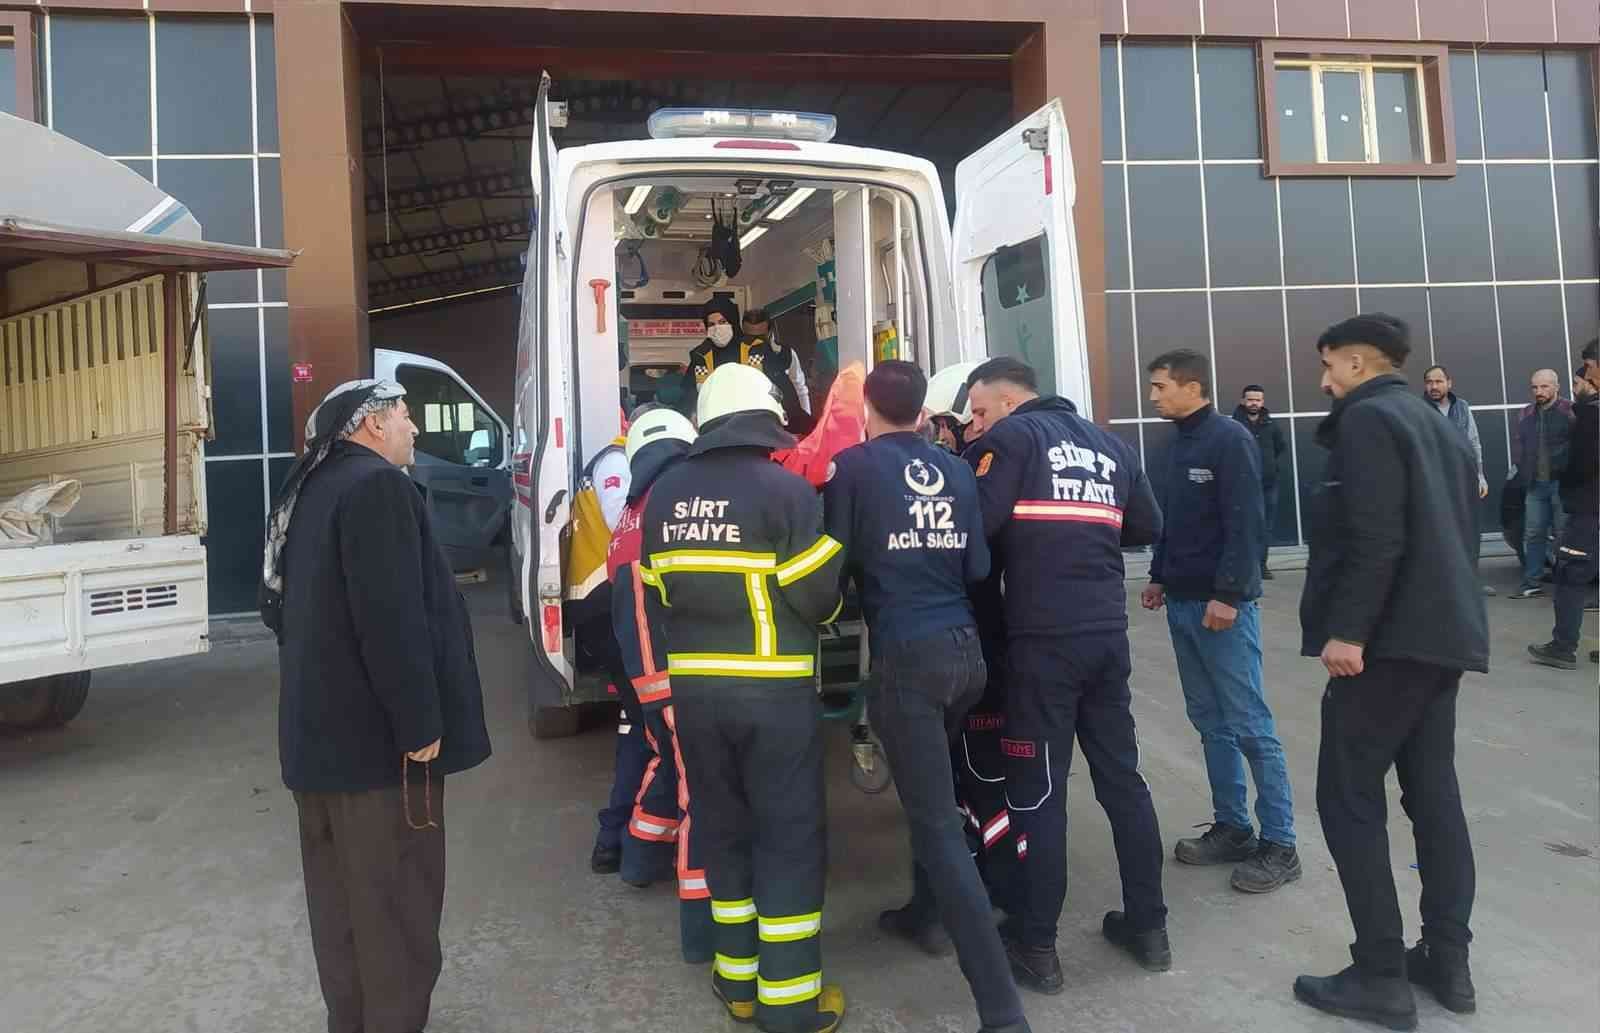 Siirt’te helyum gazı dolu varilde patlama: 1 yaralı #siirt